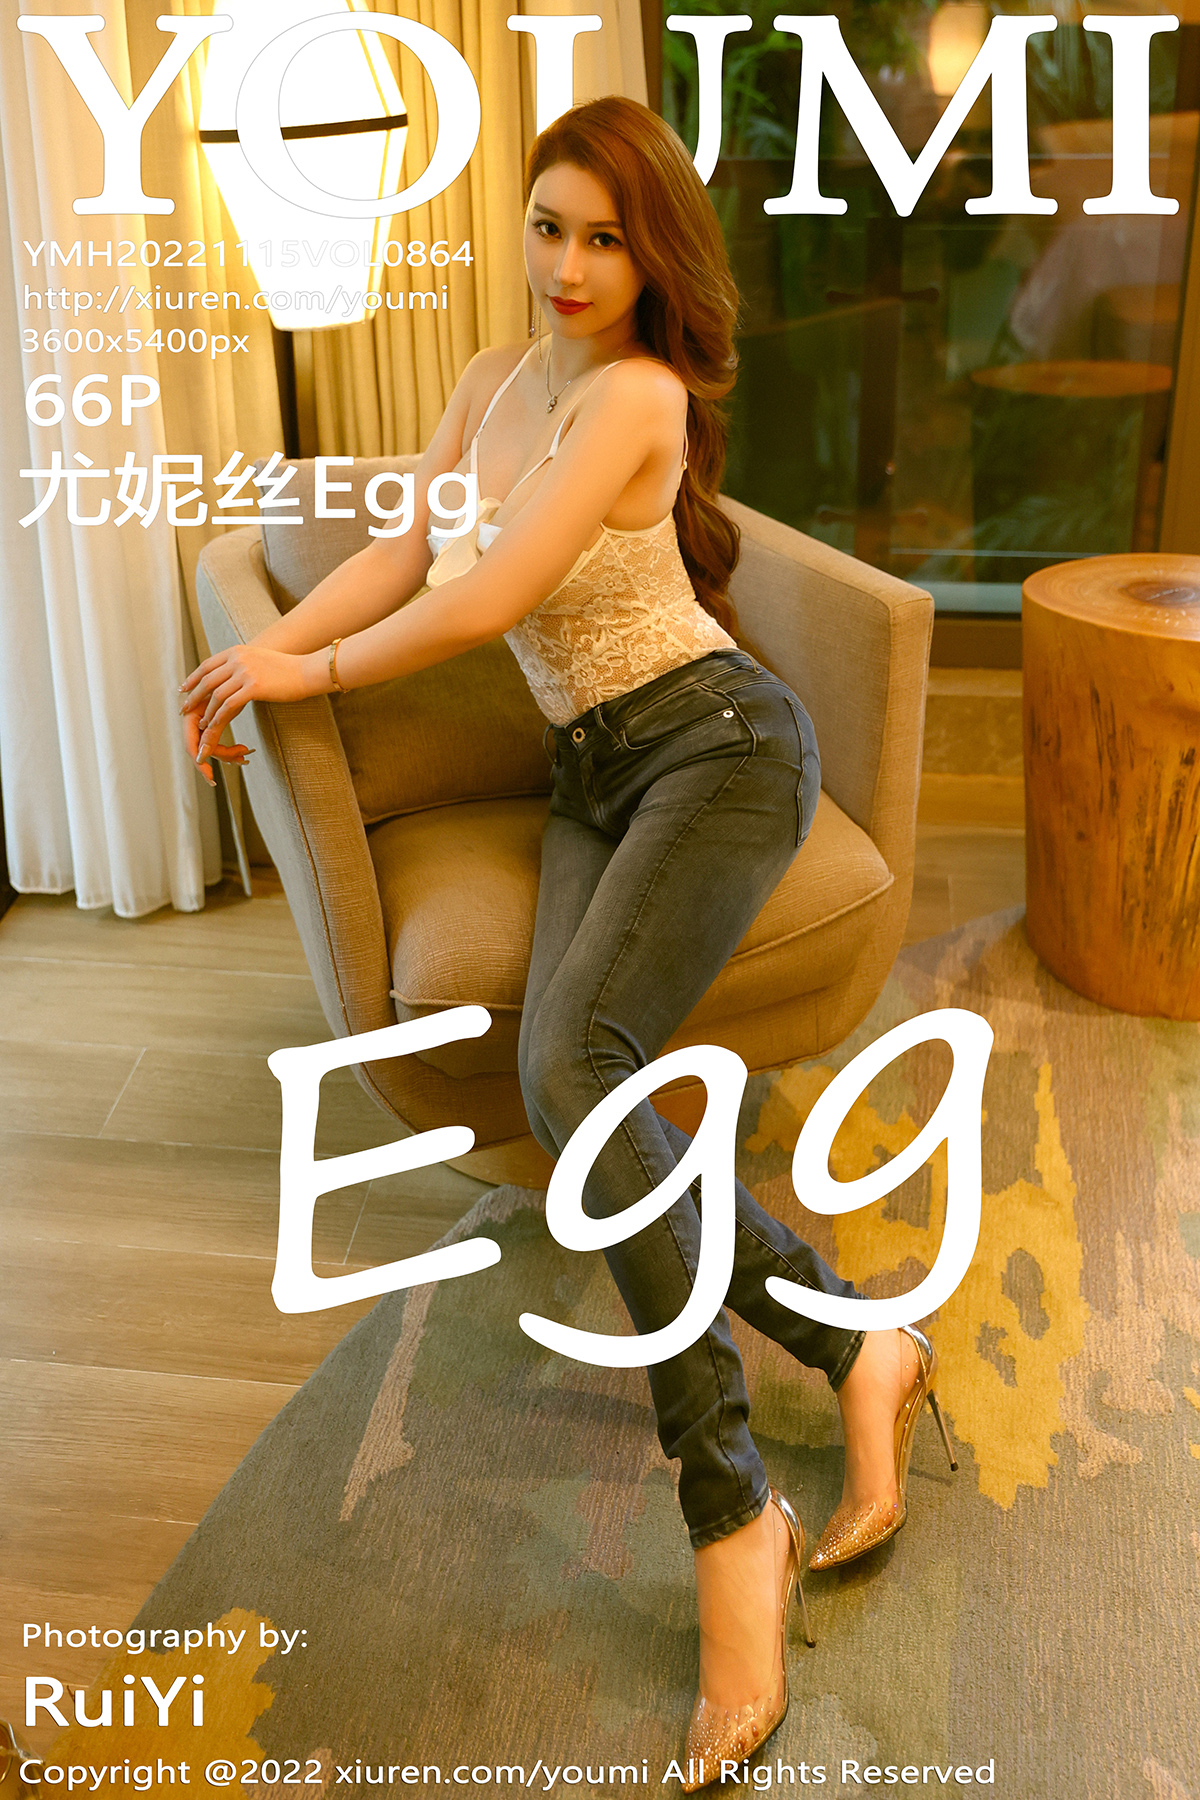 【YOUMI尤蜜荟】2022.11.15 Vol.864 尤妮絲Egg 完整版無水印寫真【66P】 - 貼圖 - 絲襪美腿 -